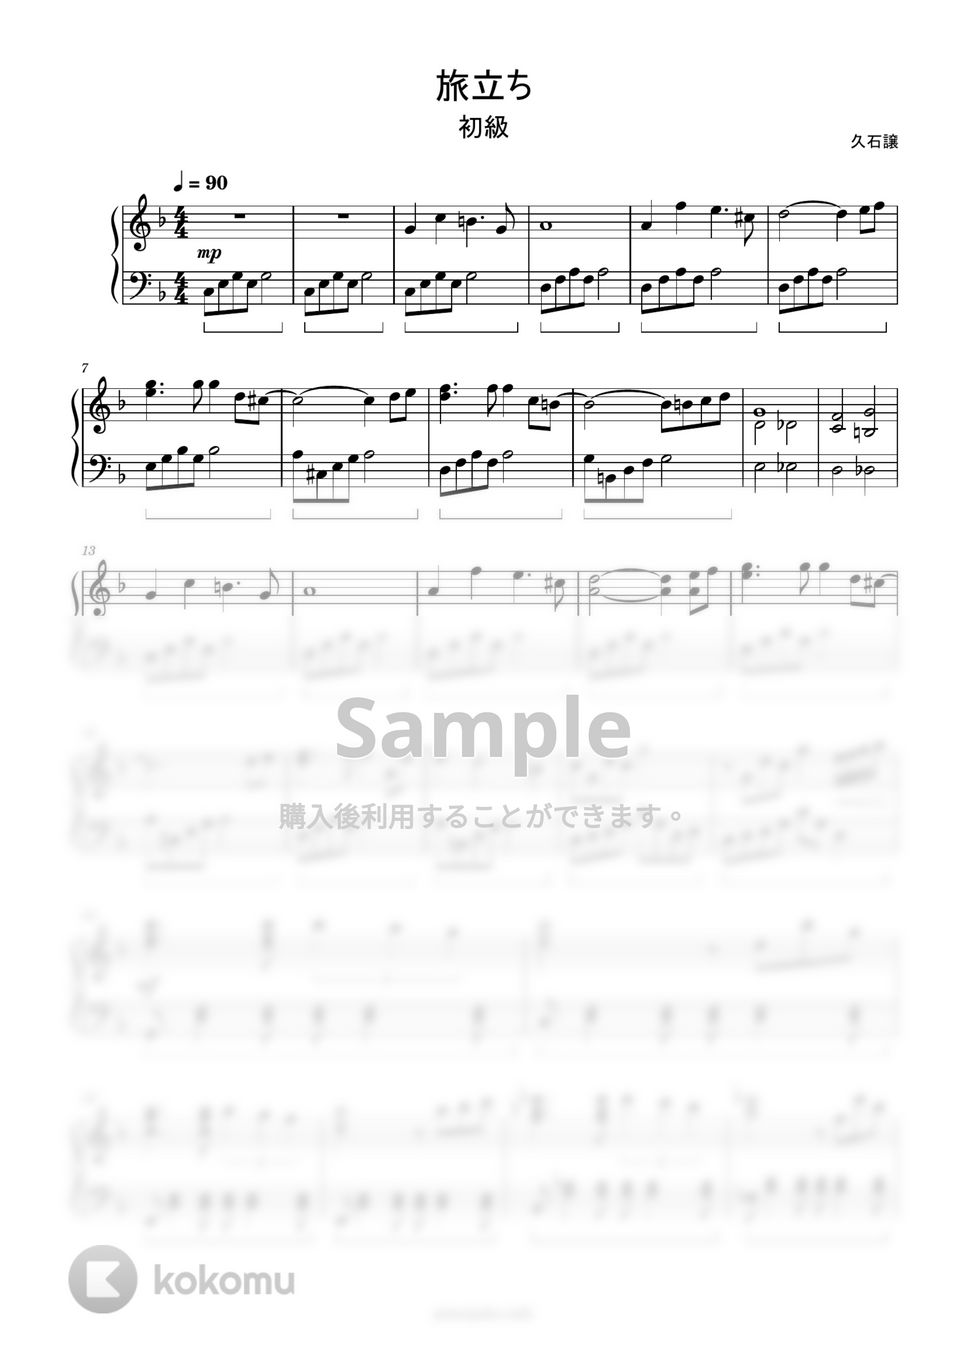 久石譲 - 旅立ち (簡単楽譜) by ピアノ塾